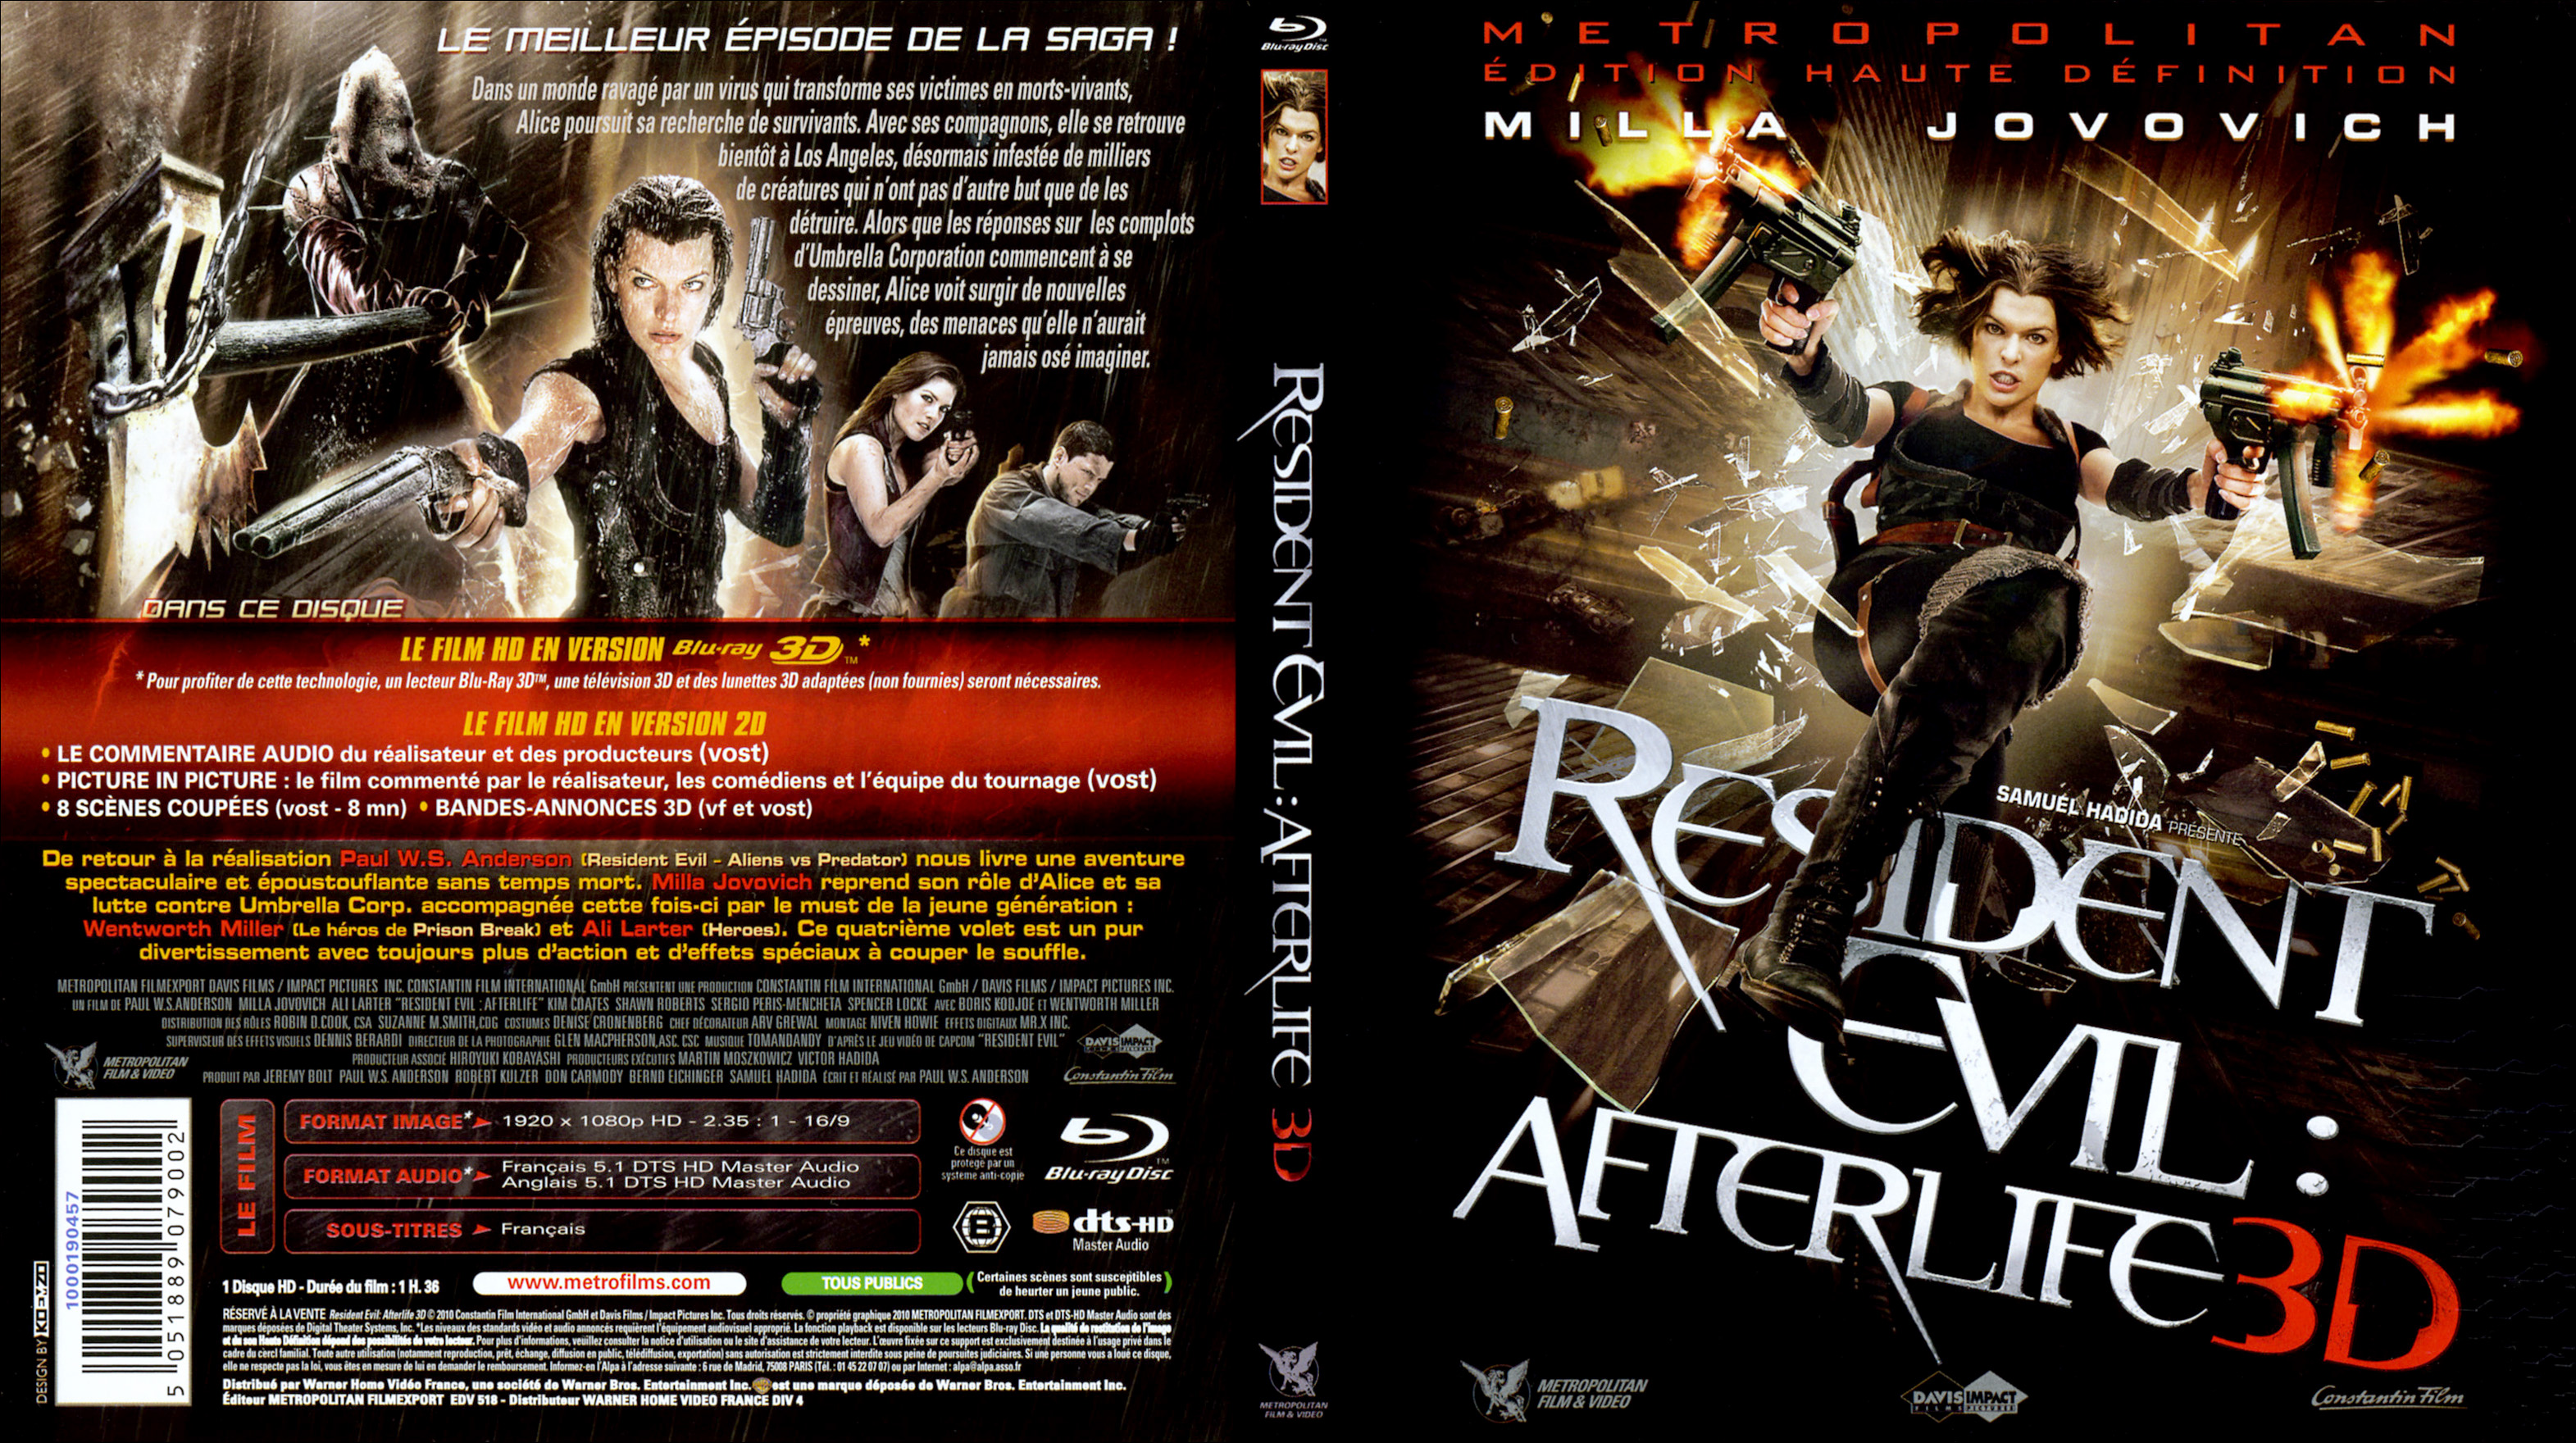 Jaquette DVD Resident Evil Afterlife 3D (BLU-RAY) v3